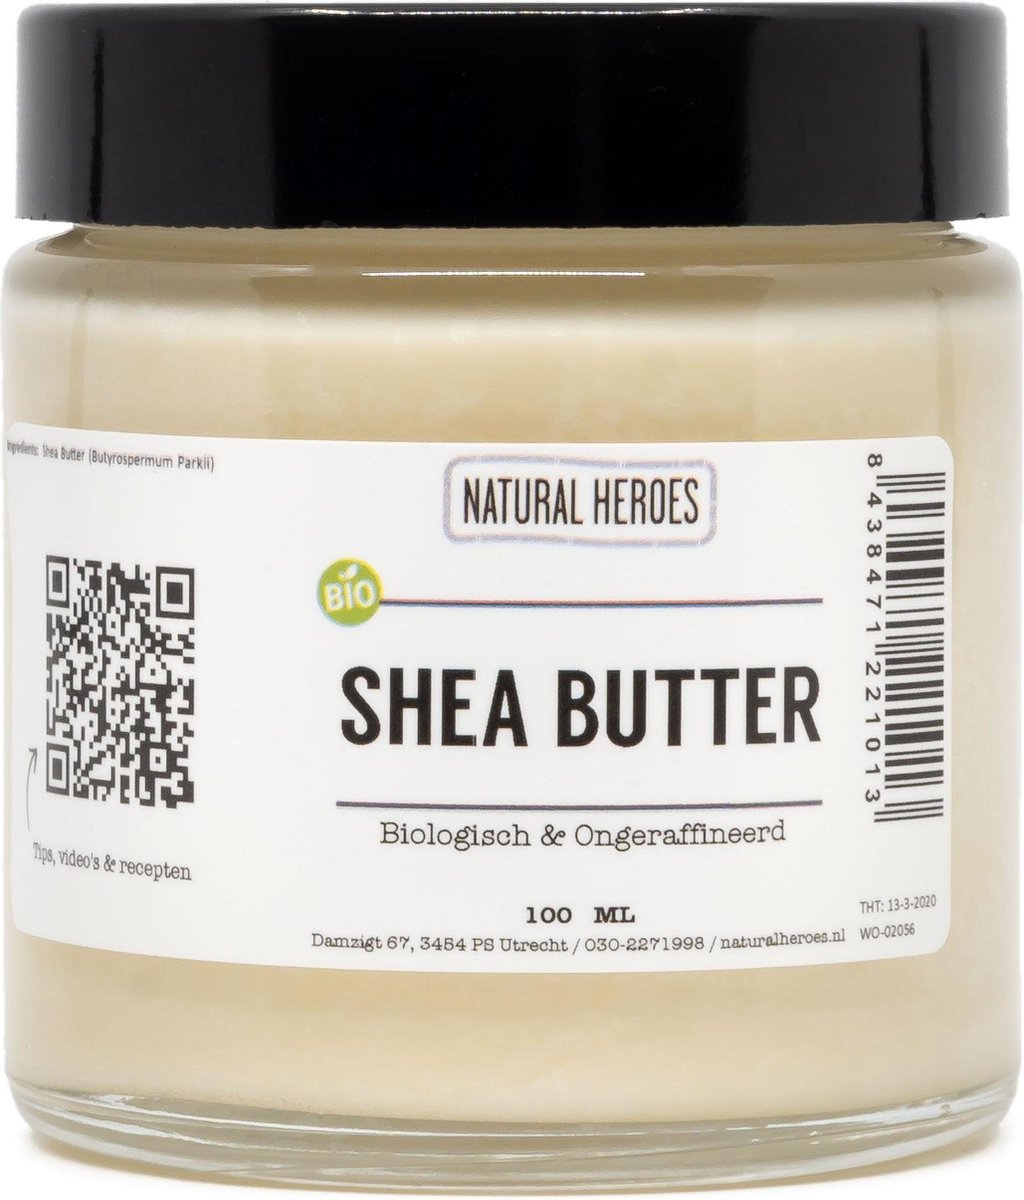 Shea Butter (Biologisch & Ongeraffineerd) 100 ml